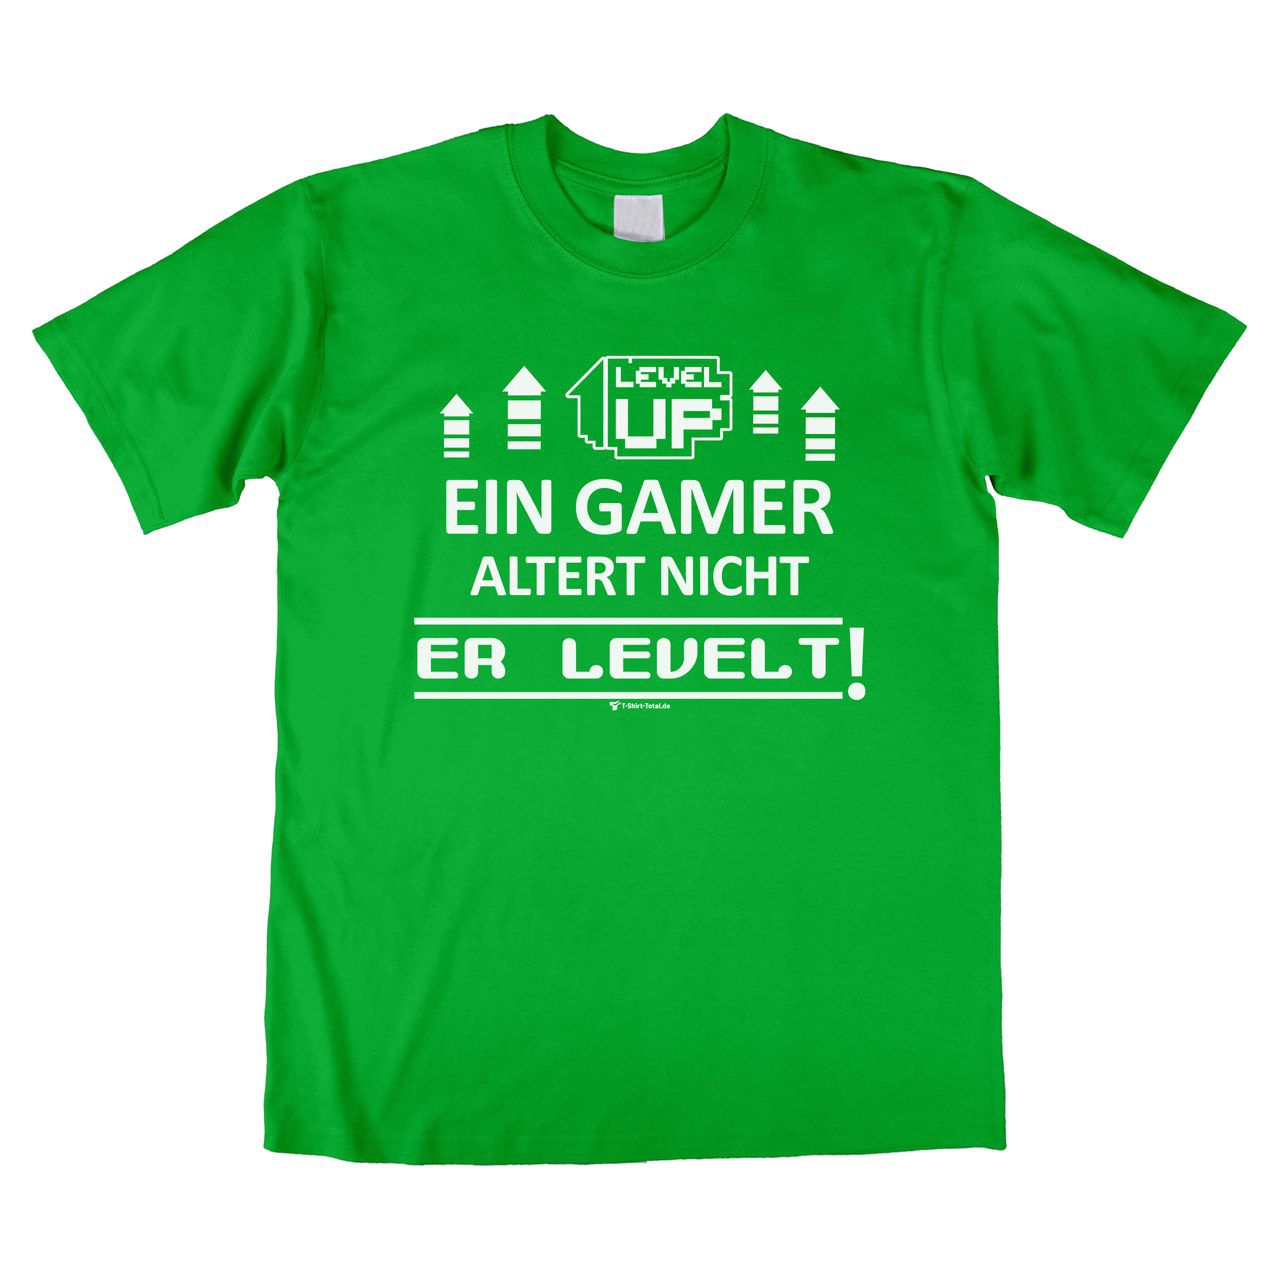 Ein Gamer levelt Unisex T-Shirt grün Medium